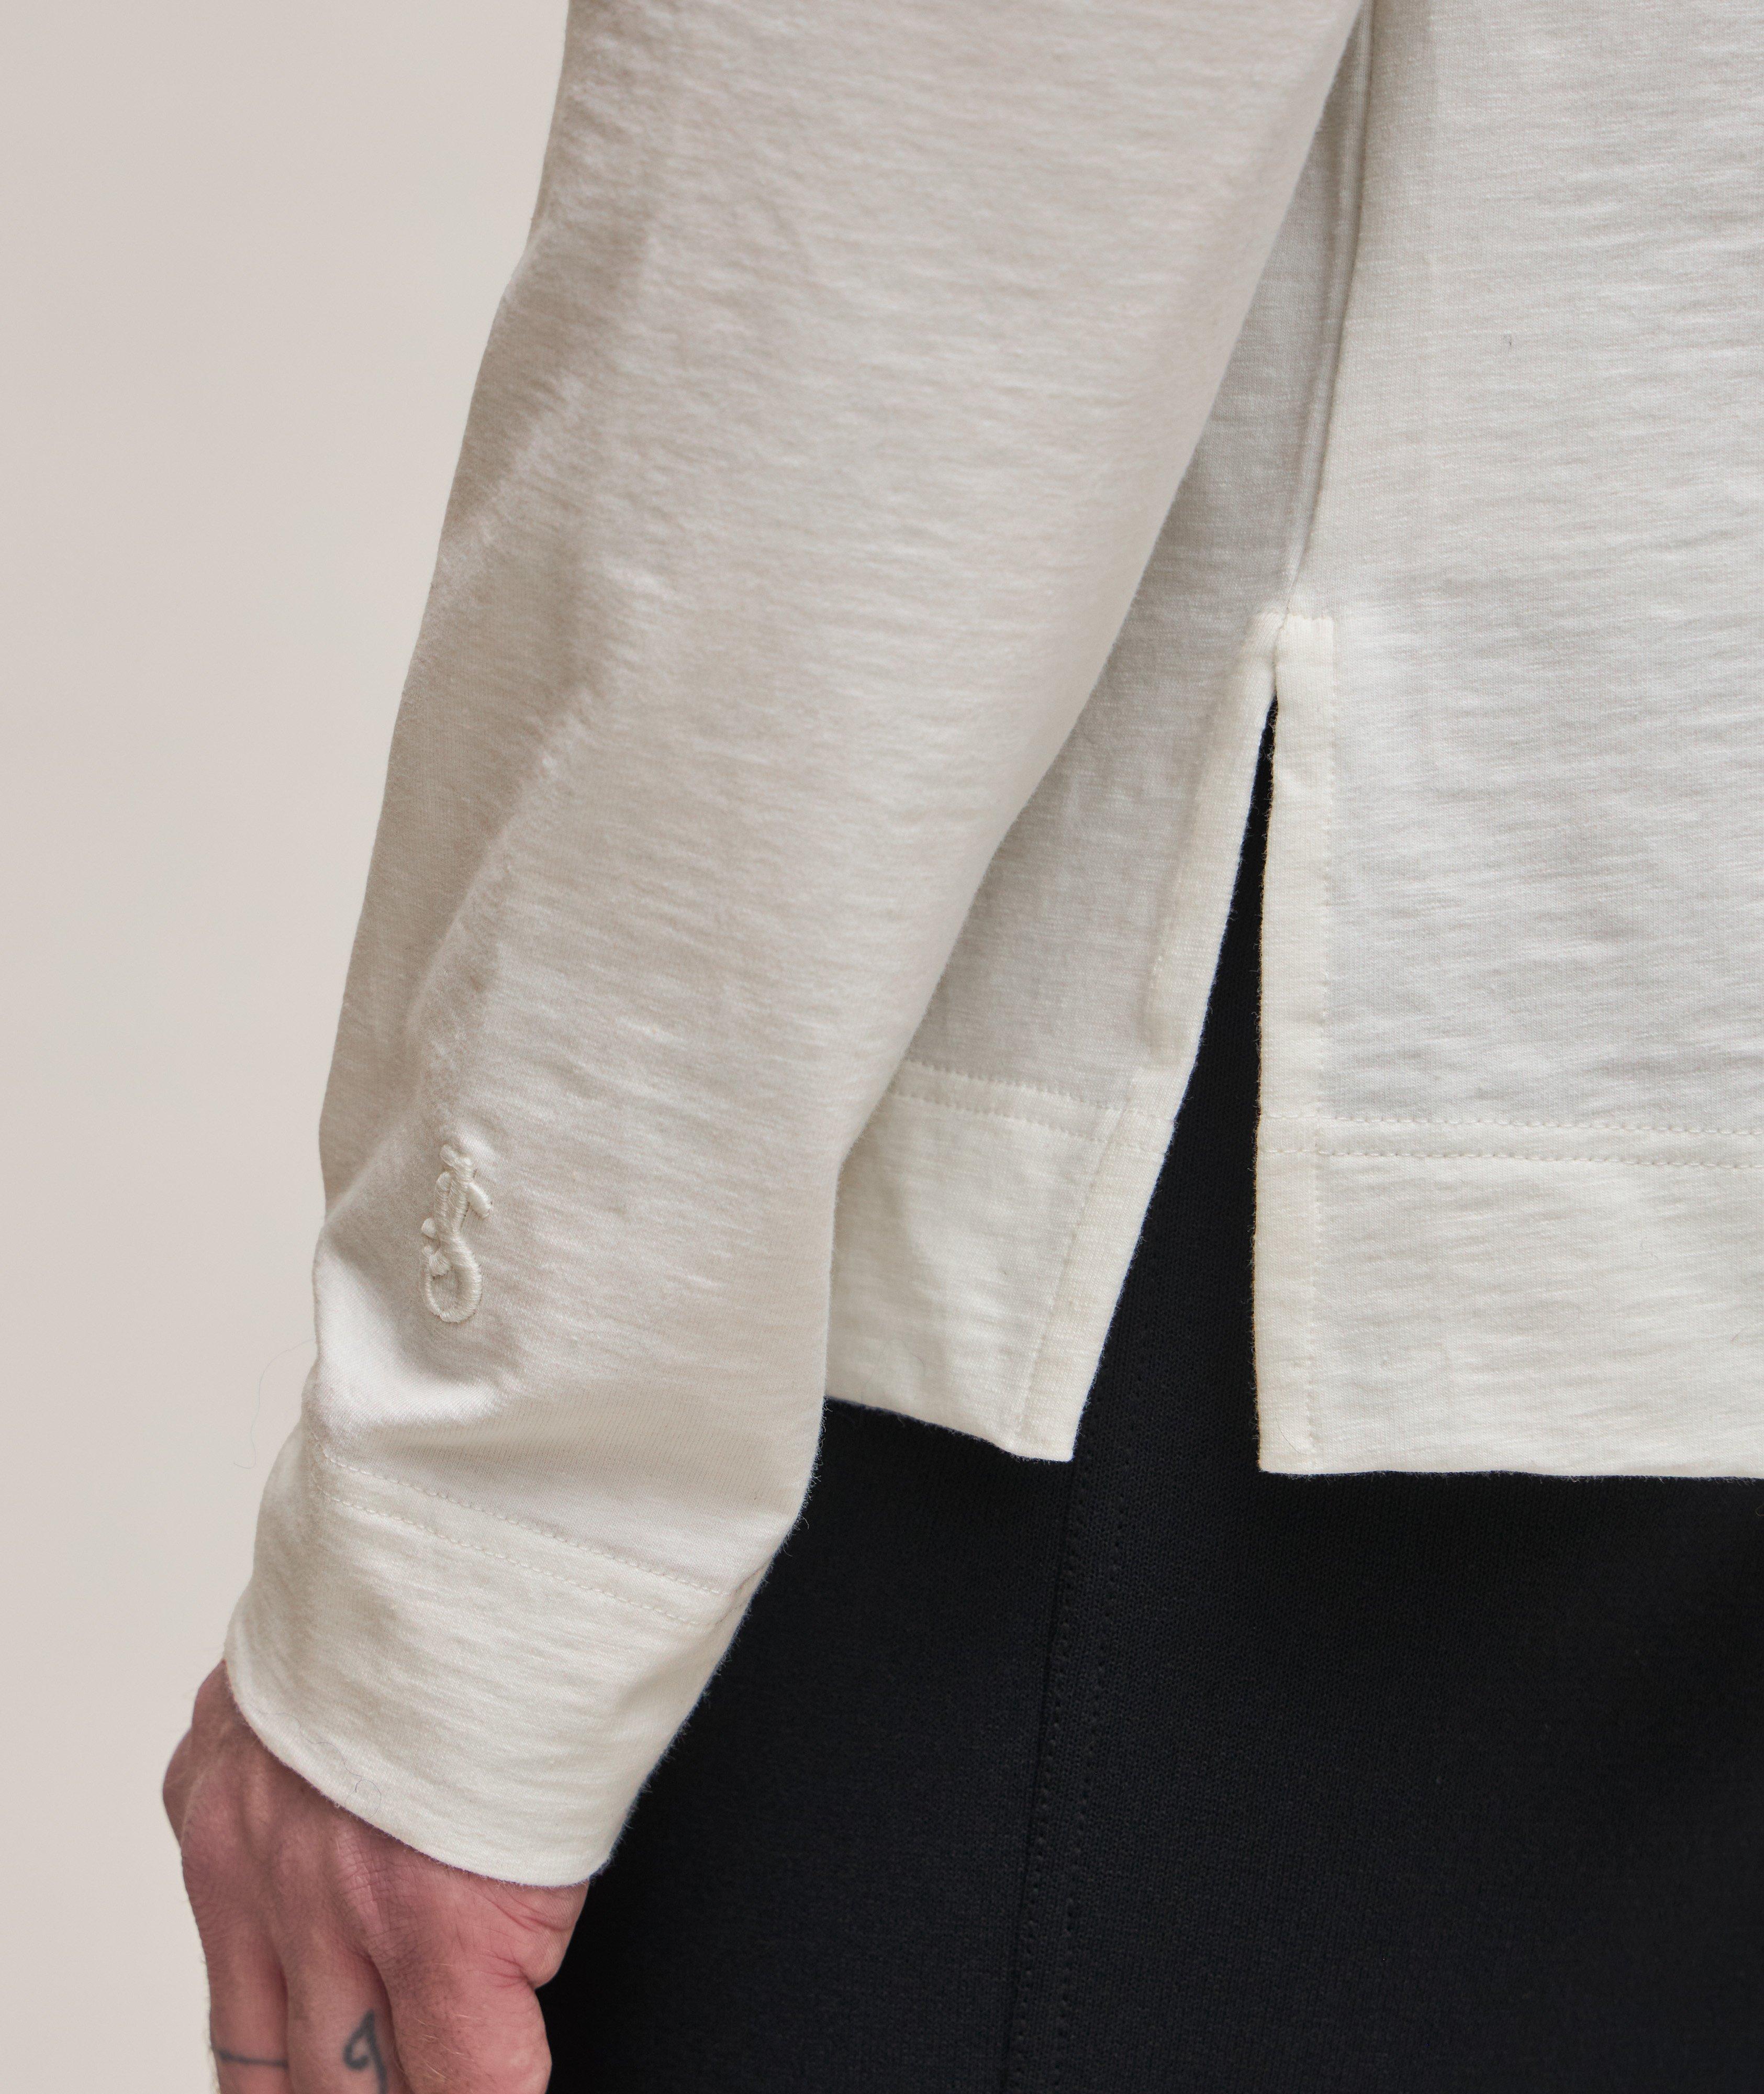 Textured Cotton-Jersey Sweatshirt